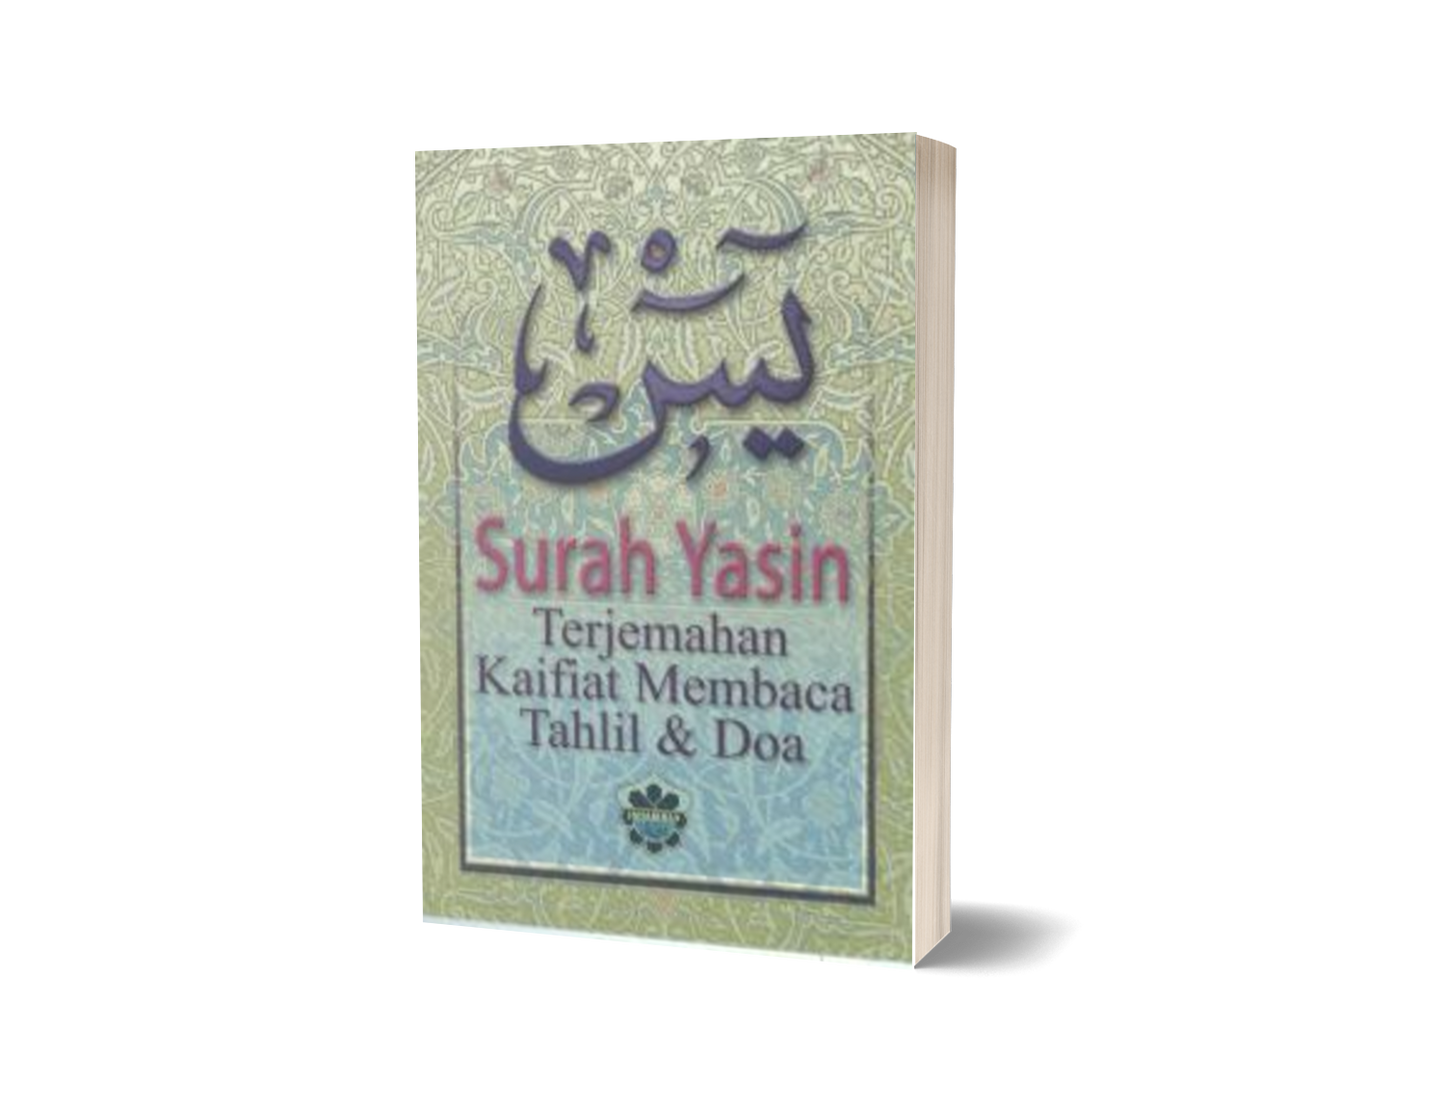 Surah Yasin, Terjemahan, Kaifiat Membaca Tahlil & Doa